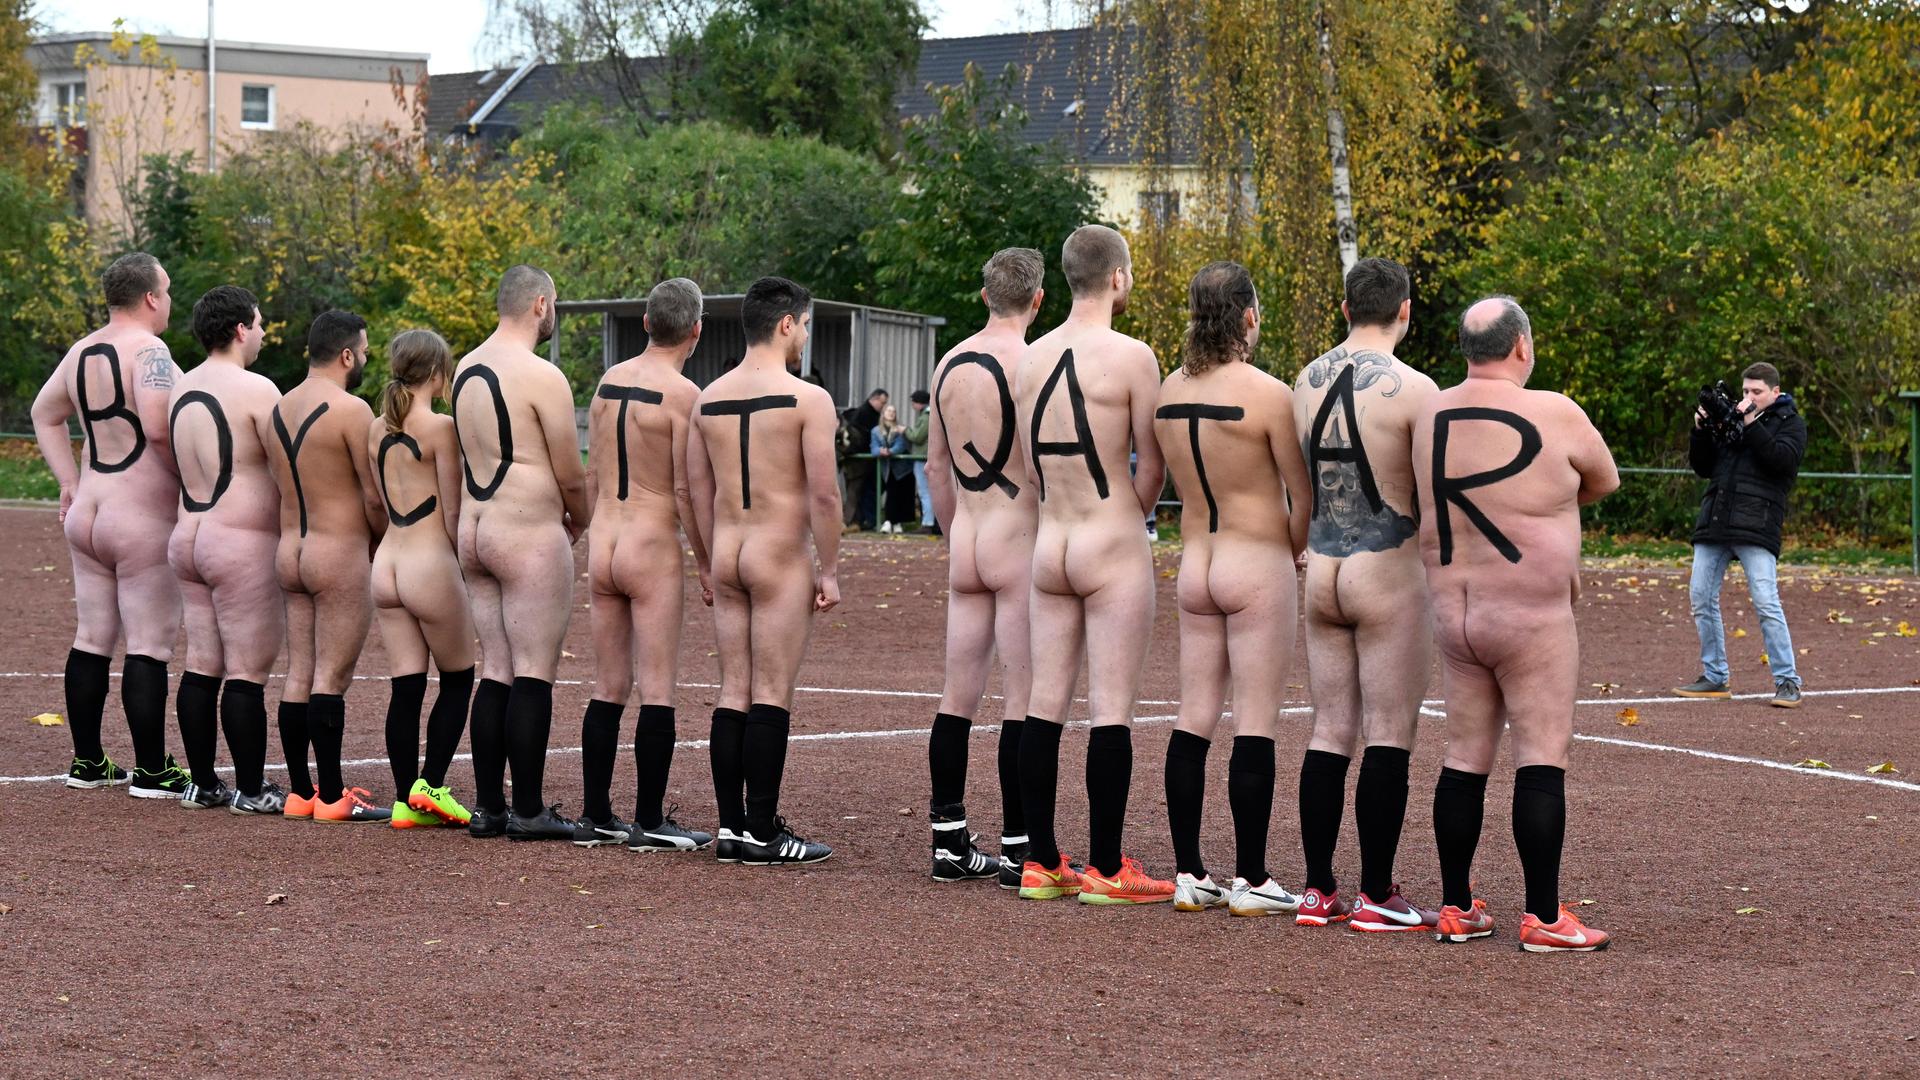 Spieler der deutschen NACKtionalmannschaft lassen sich nackt fotografieren. Die Spieler tragen auf dem Rücken große Buchstaben gemalt, die zusammen "BOYCOTT QATAR" ergeben.